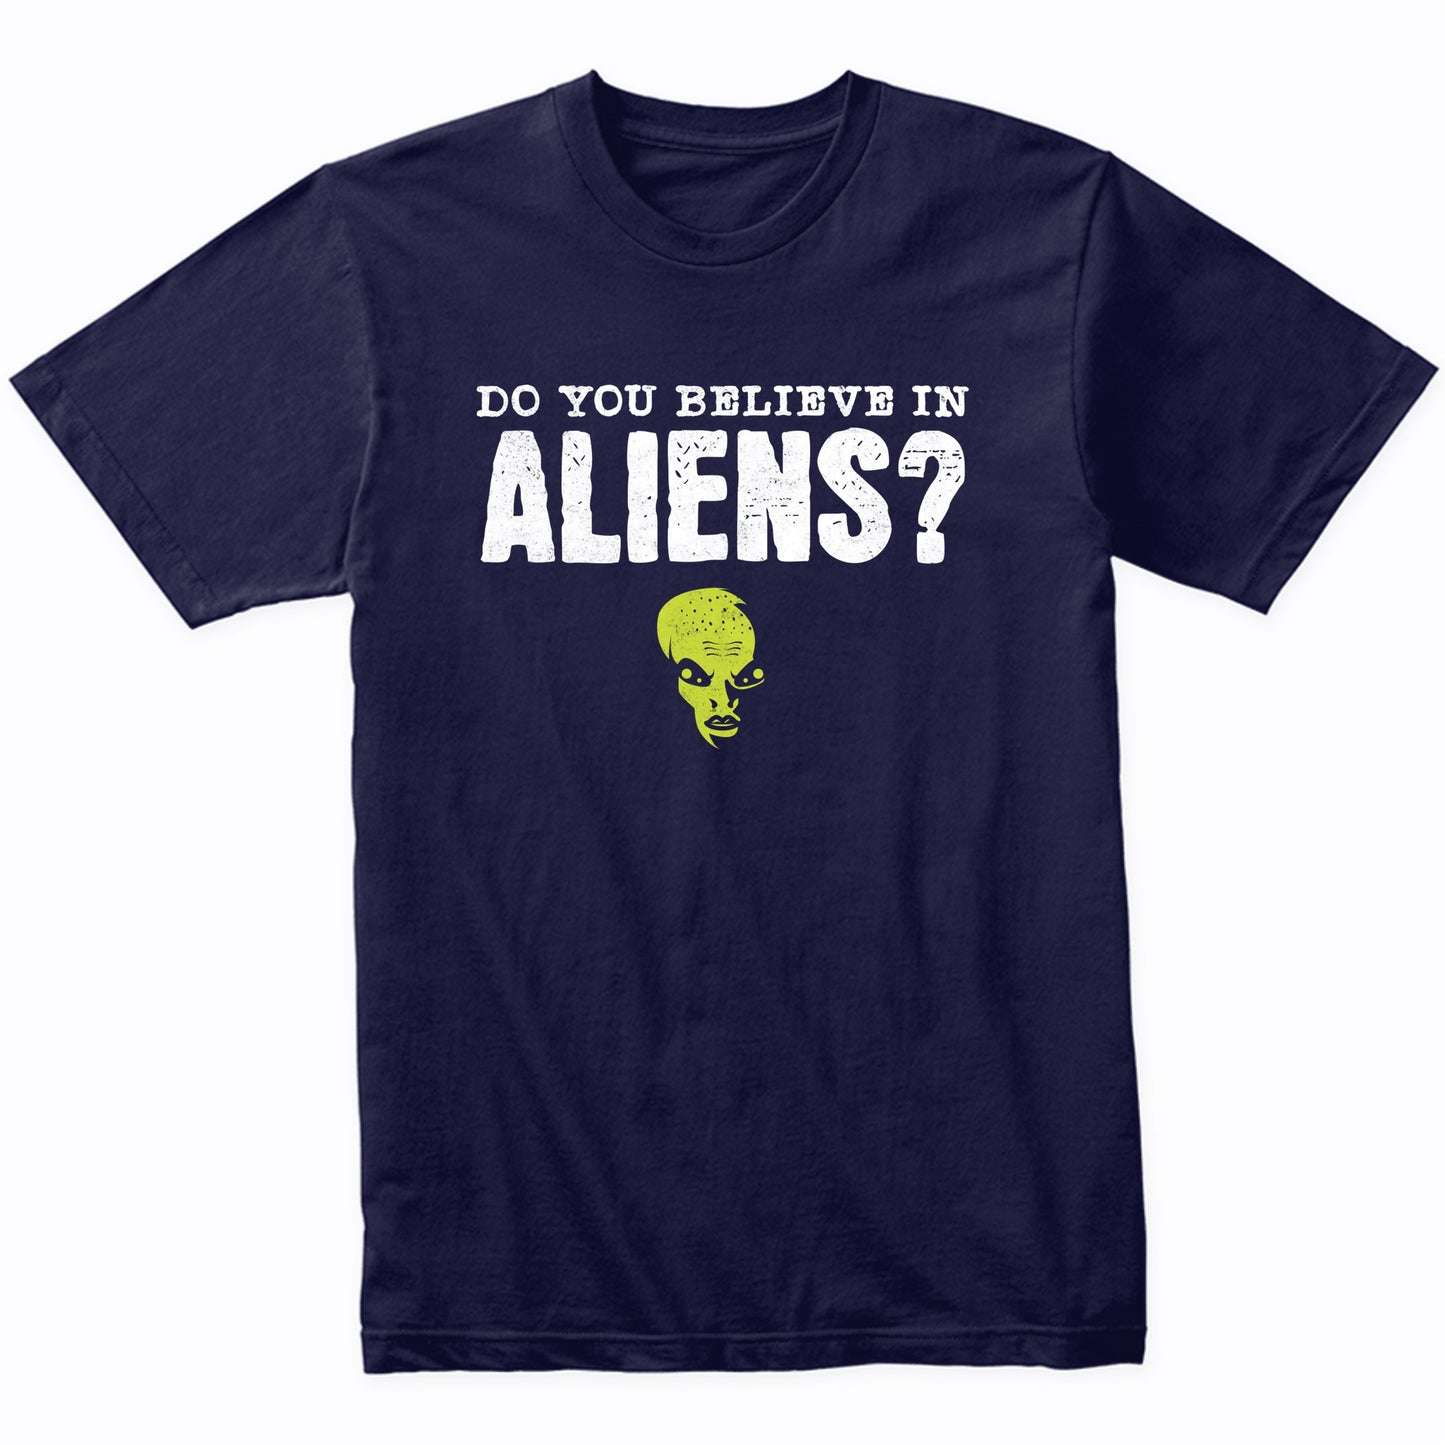 Do You Believe In Aliens? Funny Flip Shirt Alien T-Shirt - Alien Shirt - Funny Gift for Men